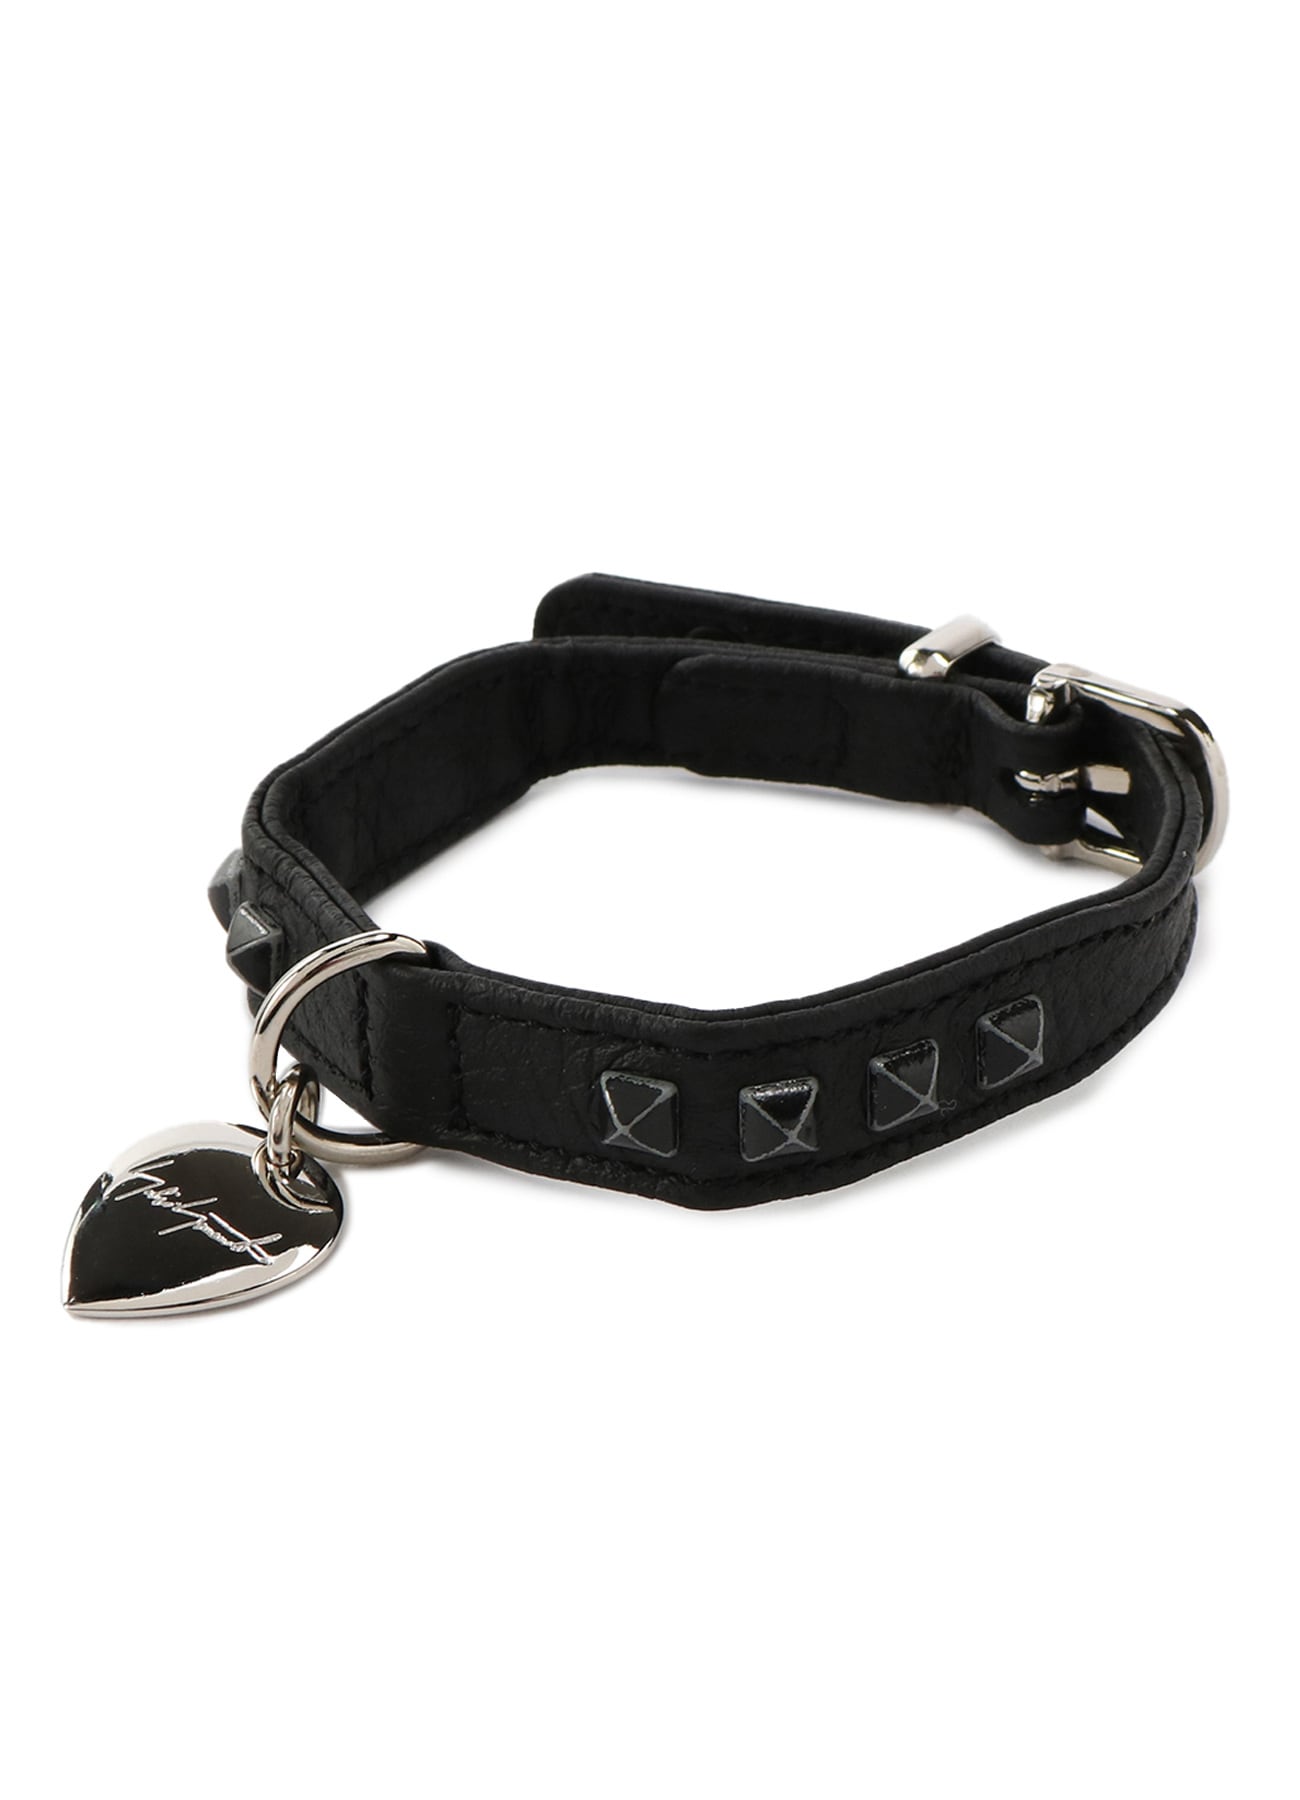 HUNTER × discord Dog collar (S Black): discord｜ THE SHOP YOHJI 